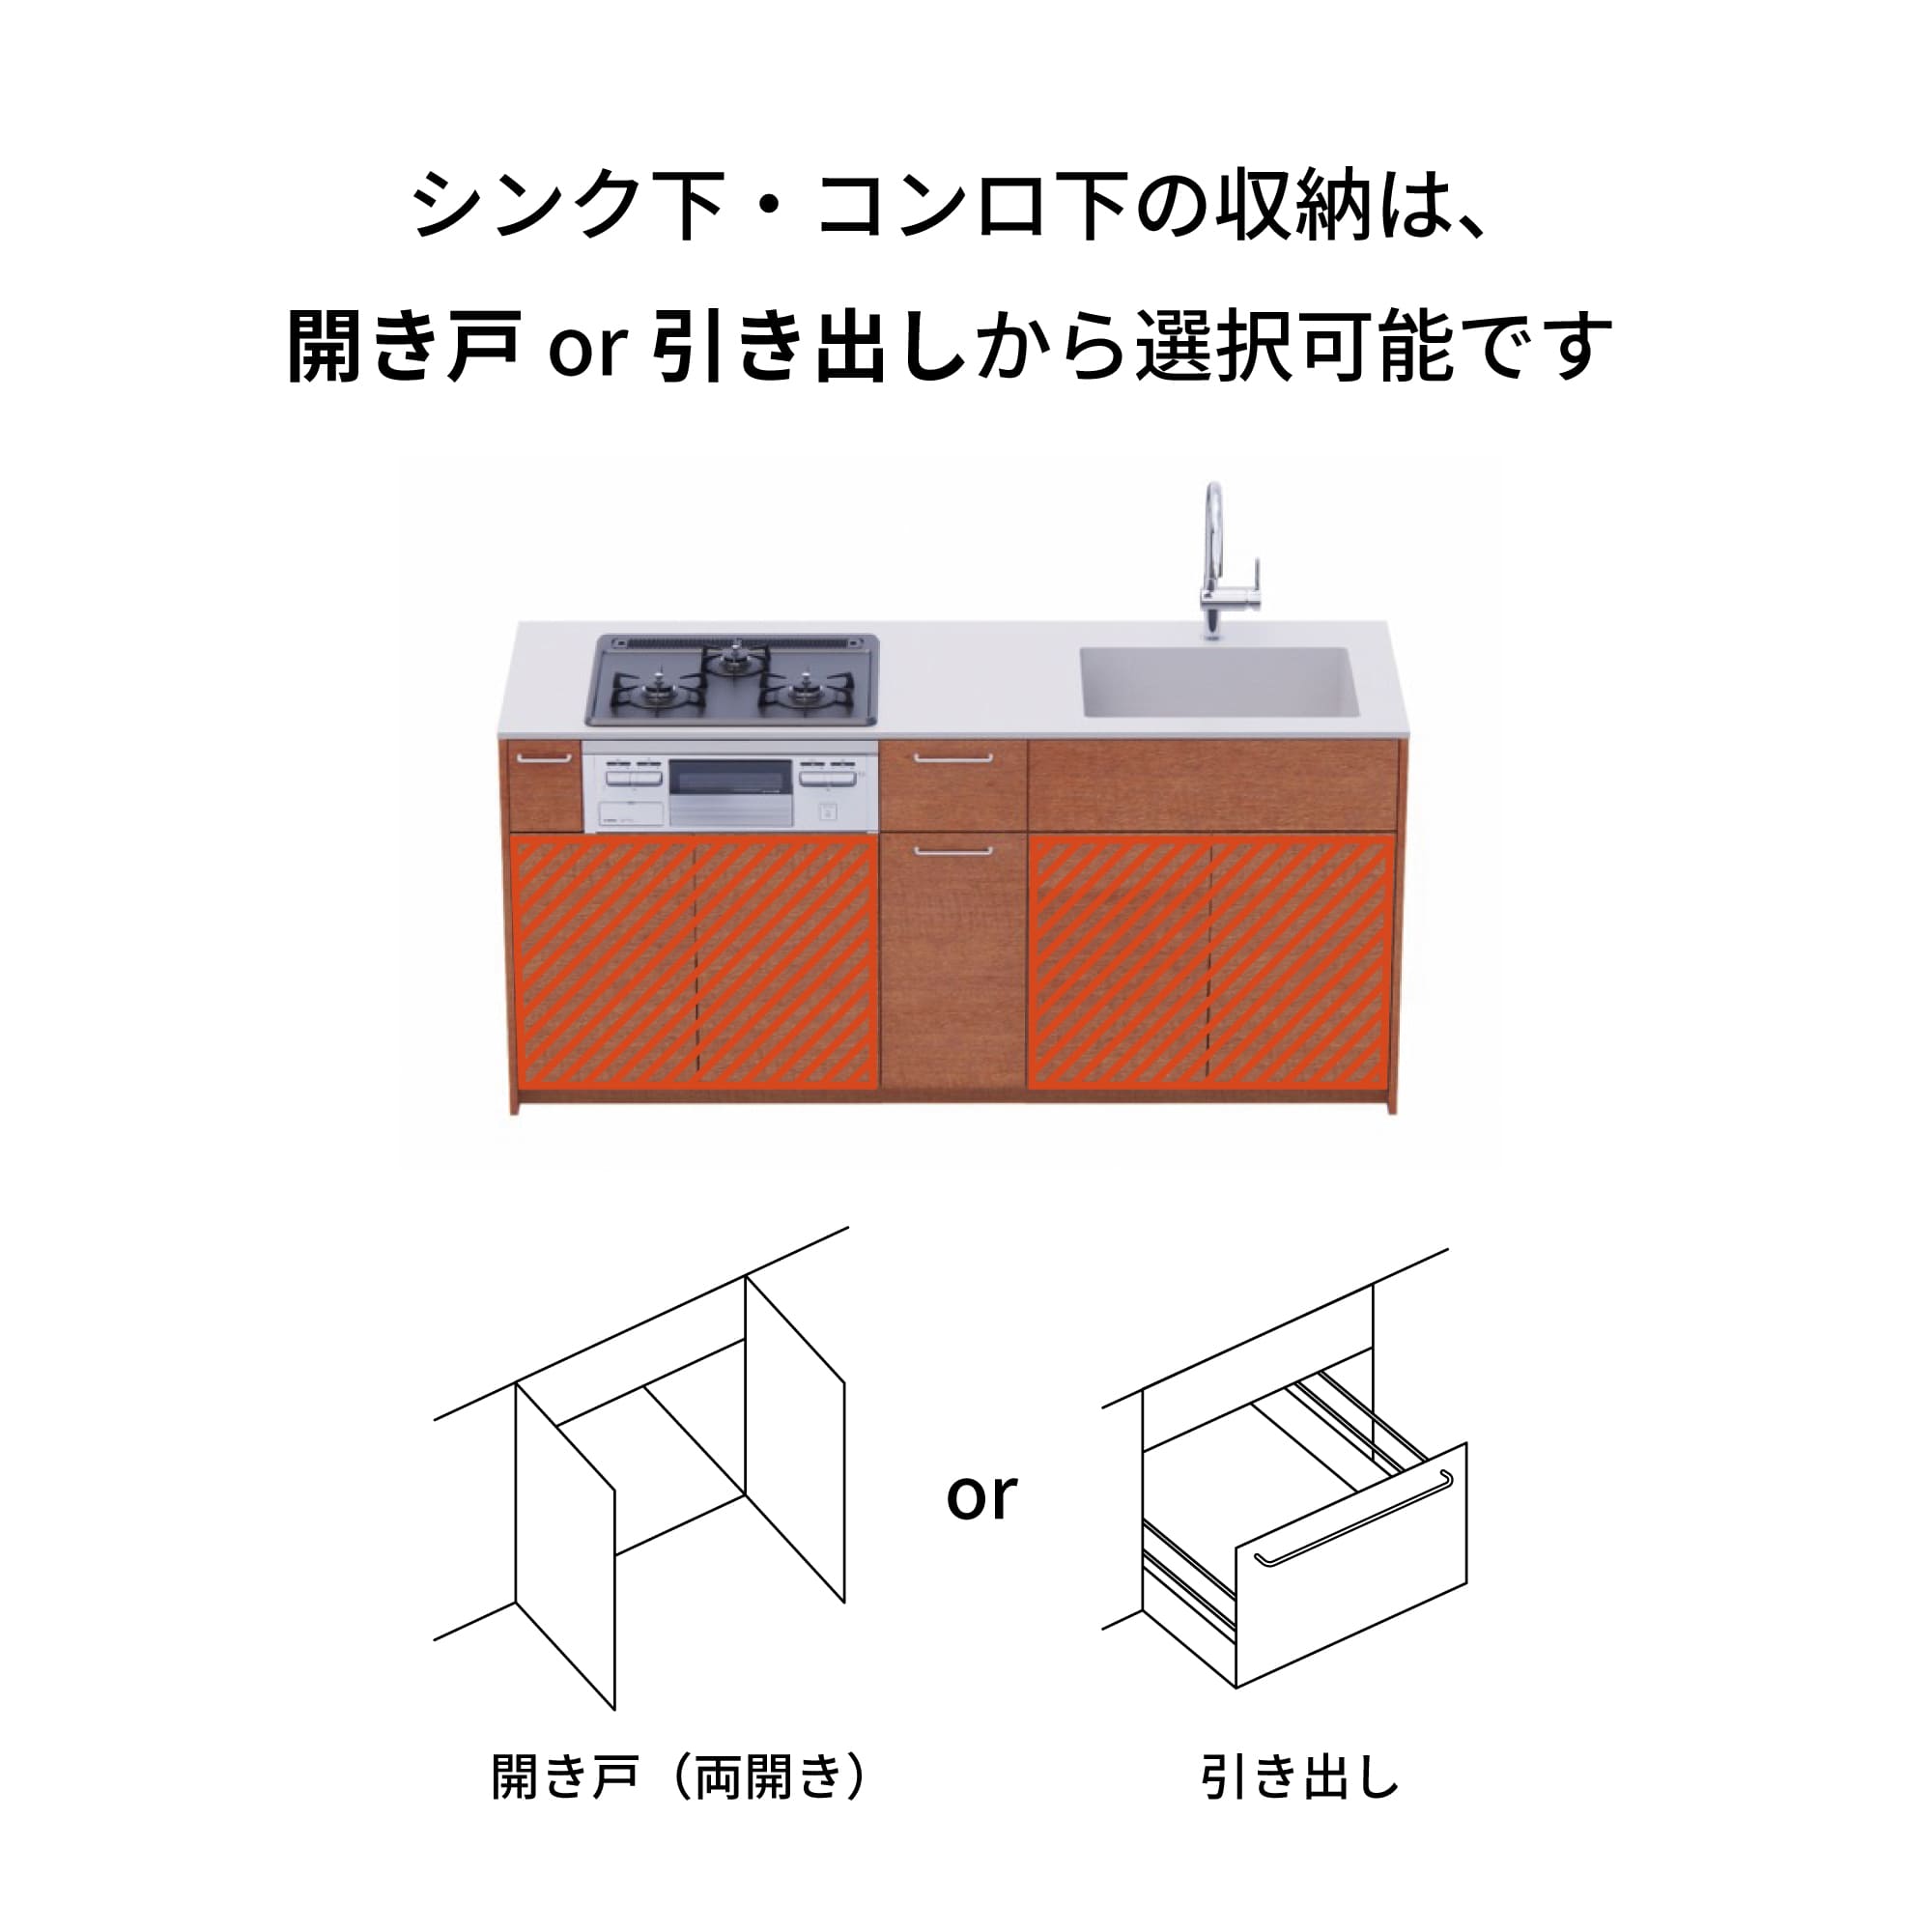 木製システムキッチン 対面型 W1840・コンロあり / オーブンなし / 食洗機なし KB-KC022-29-G183 引き出し下とコンロ下の収納が選択可能です